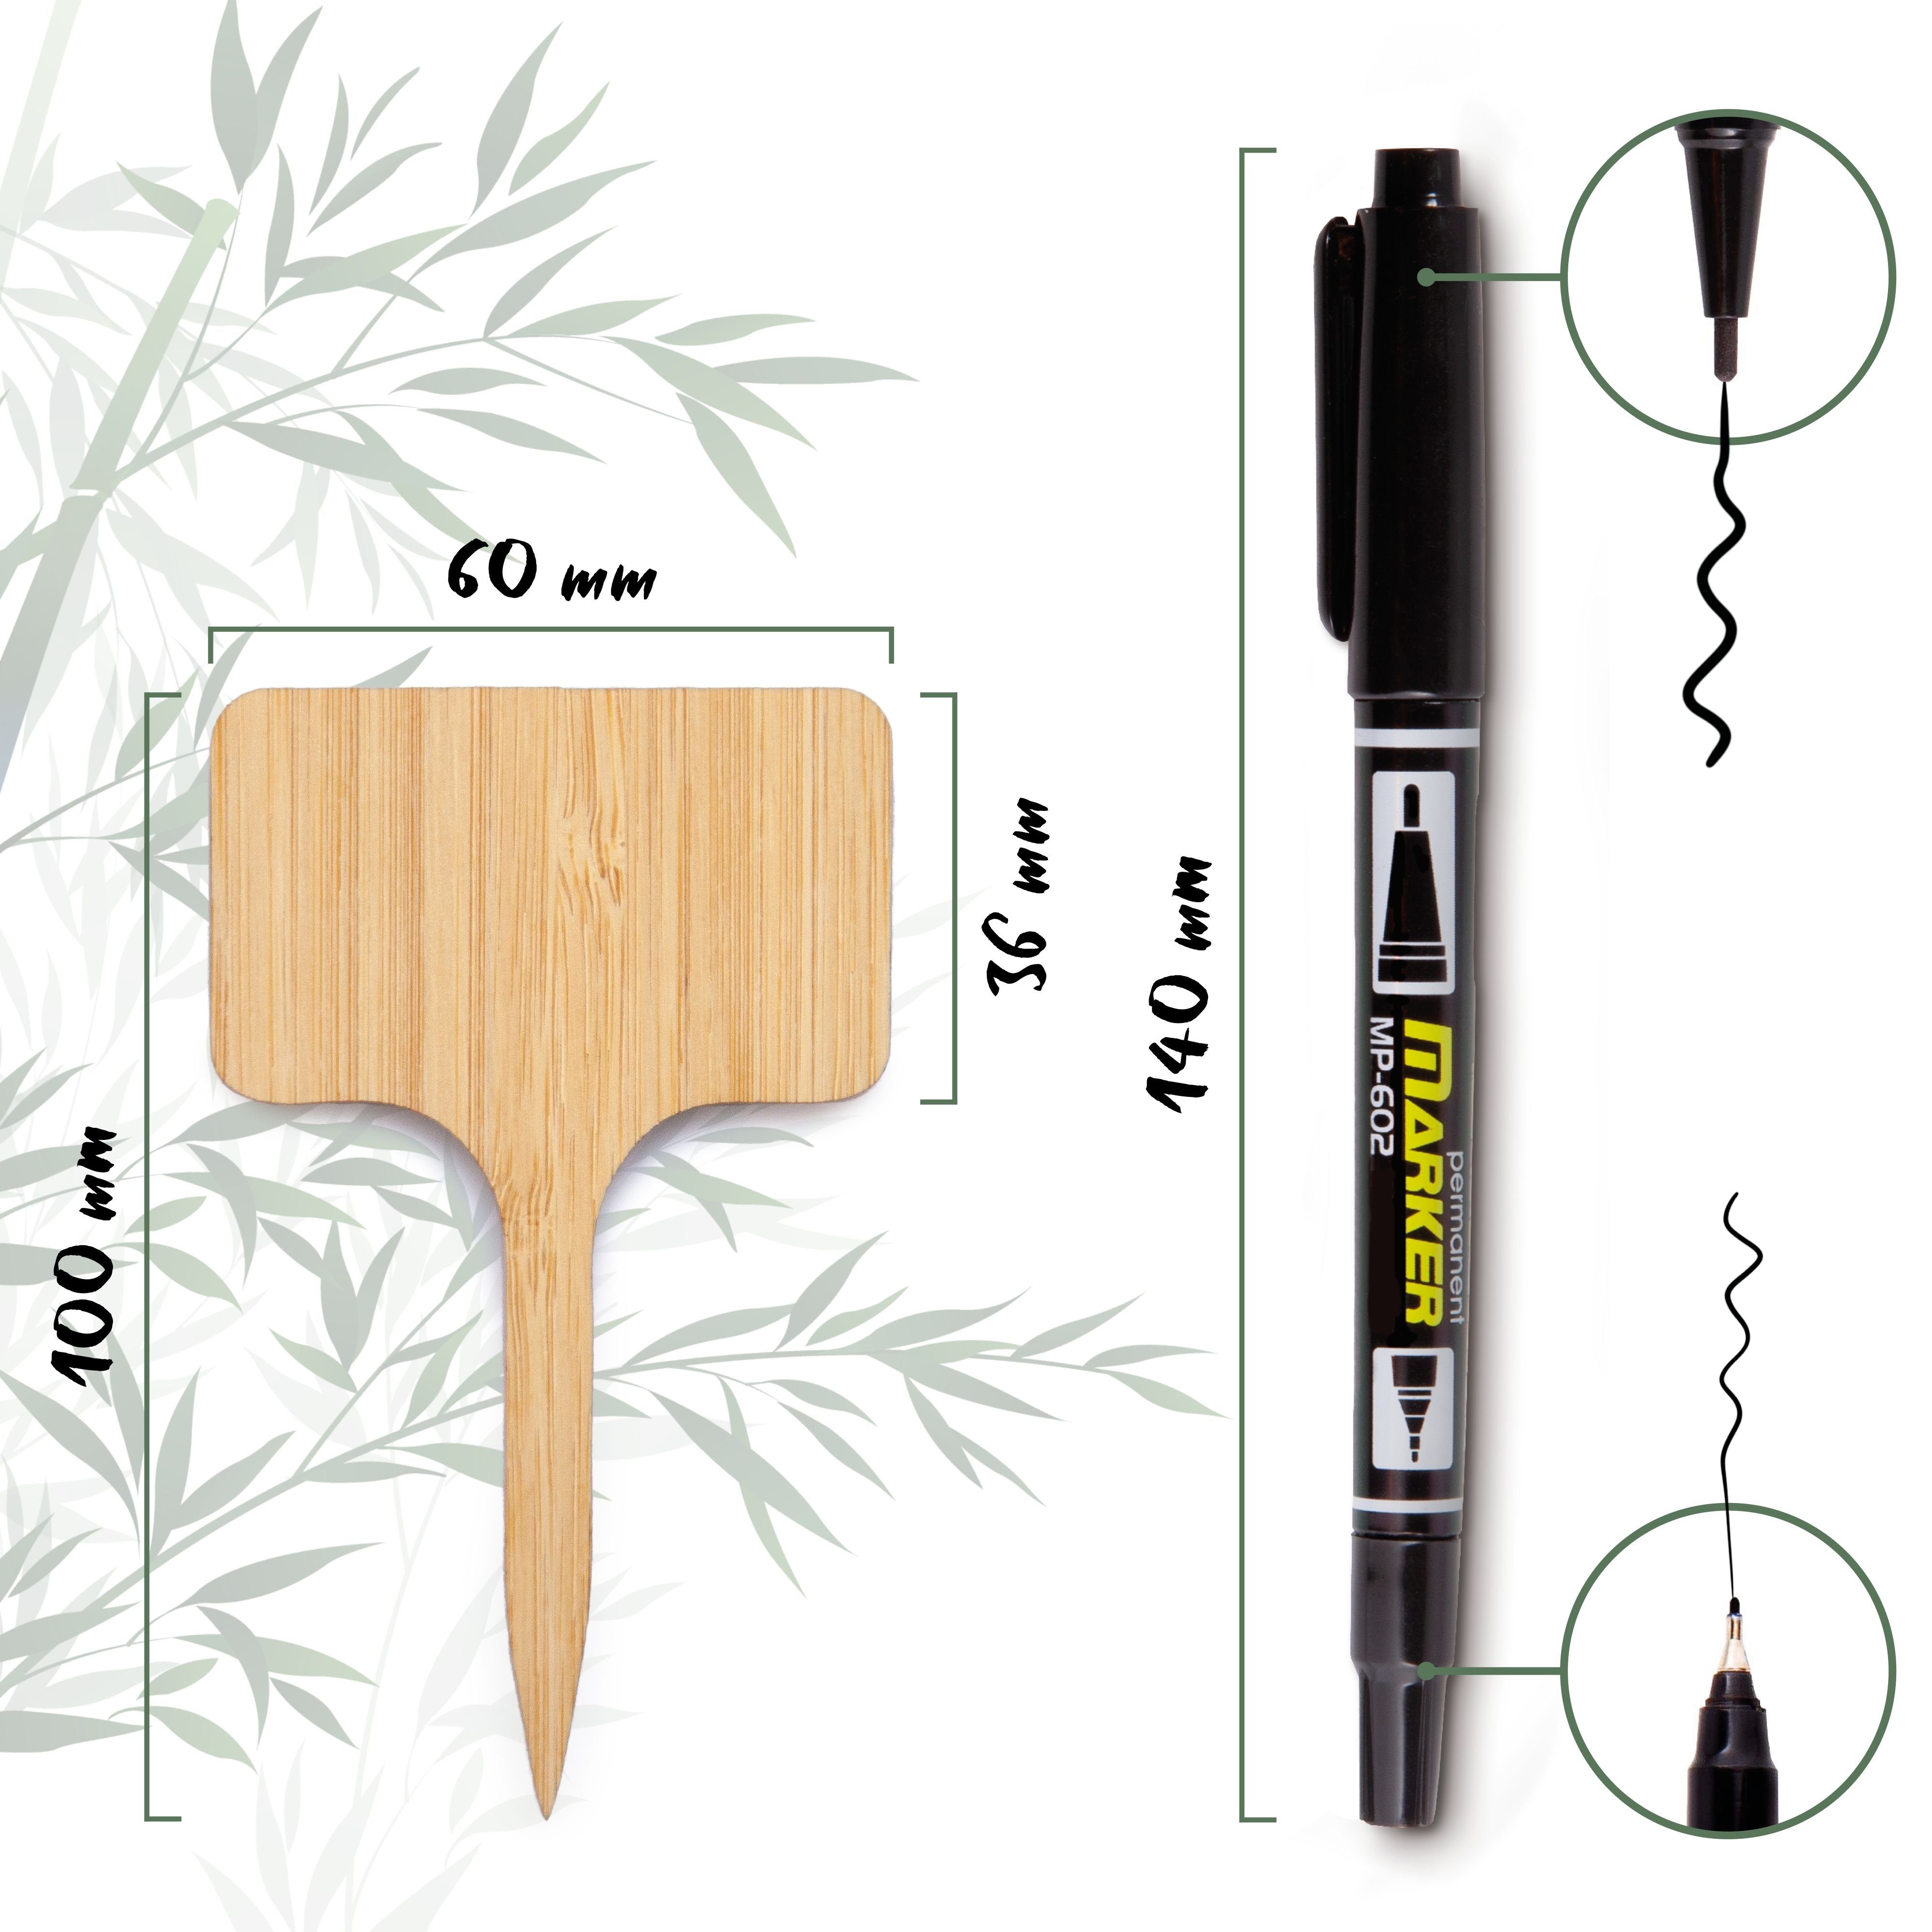 HappySeed Gartenstecker 30x Pflanzenstecker zum Bambus Beschriften aus Marker inklusive